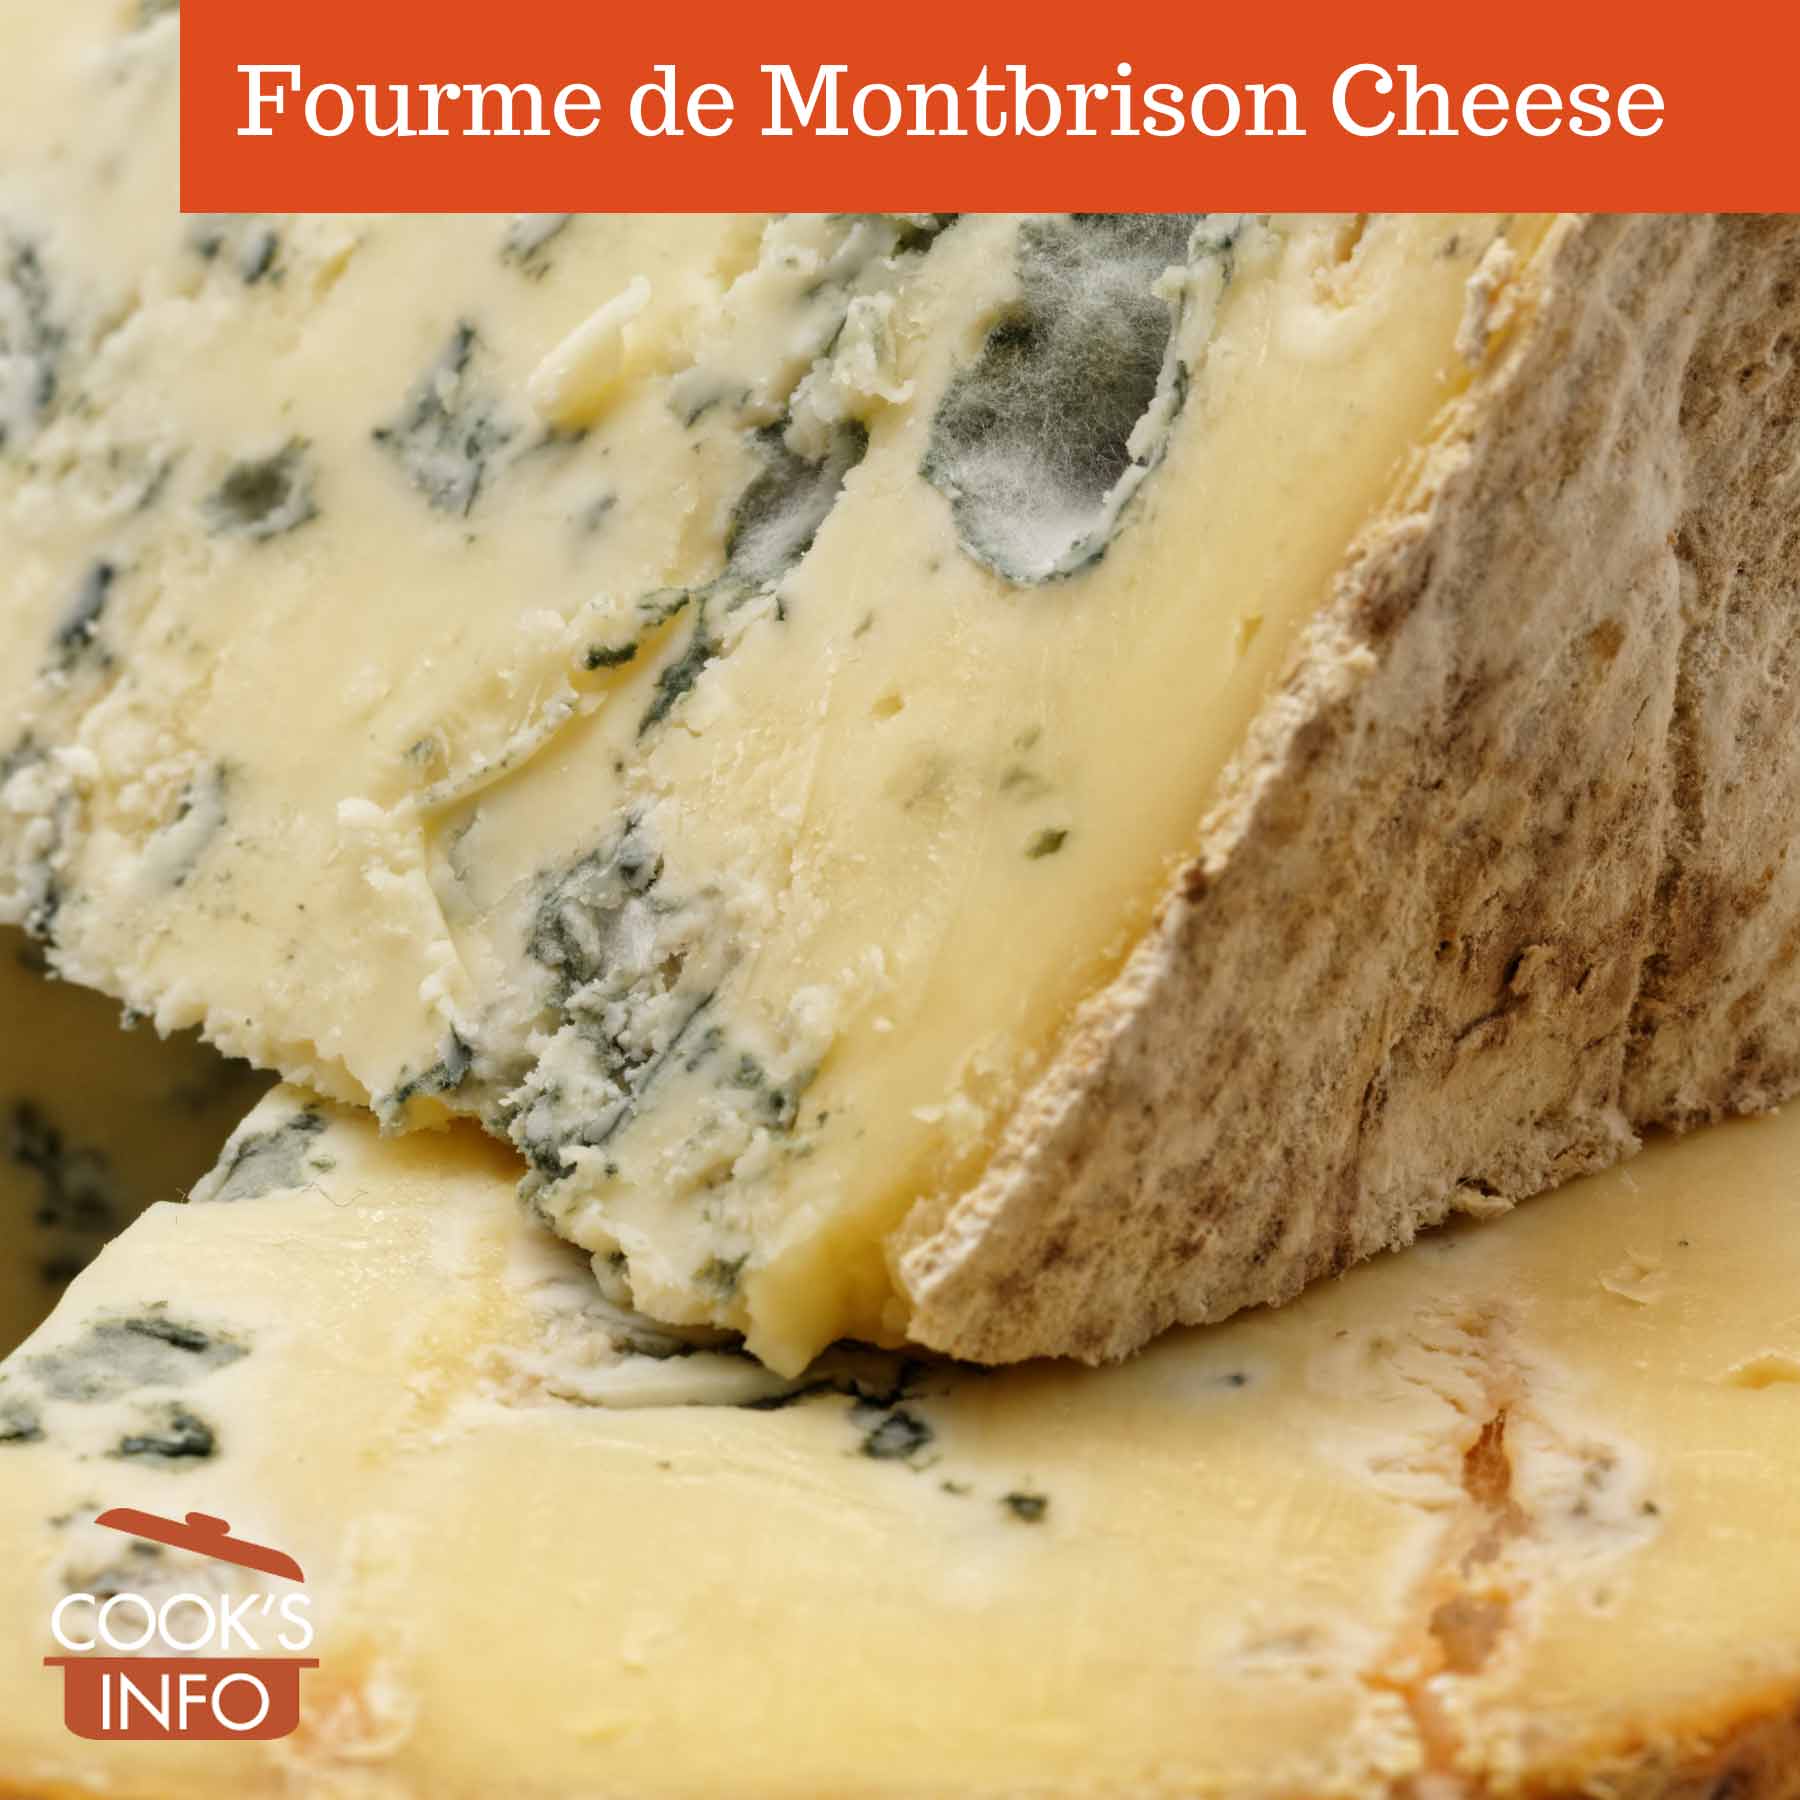 Fourme de Montbrison Cheese